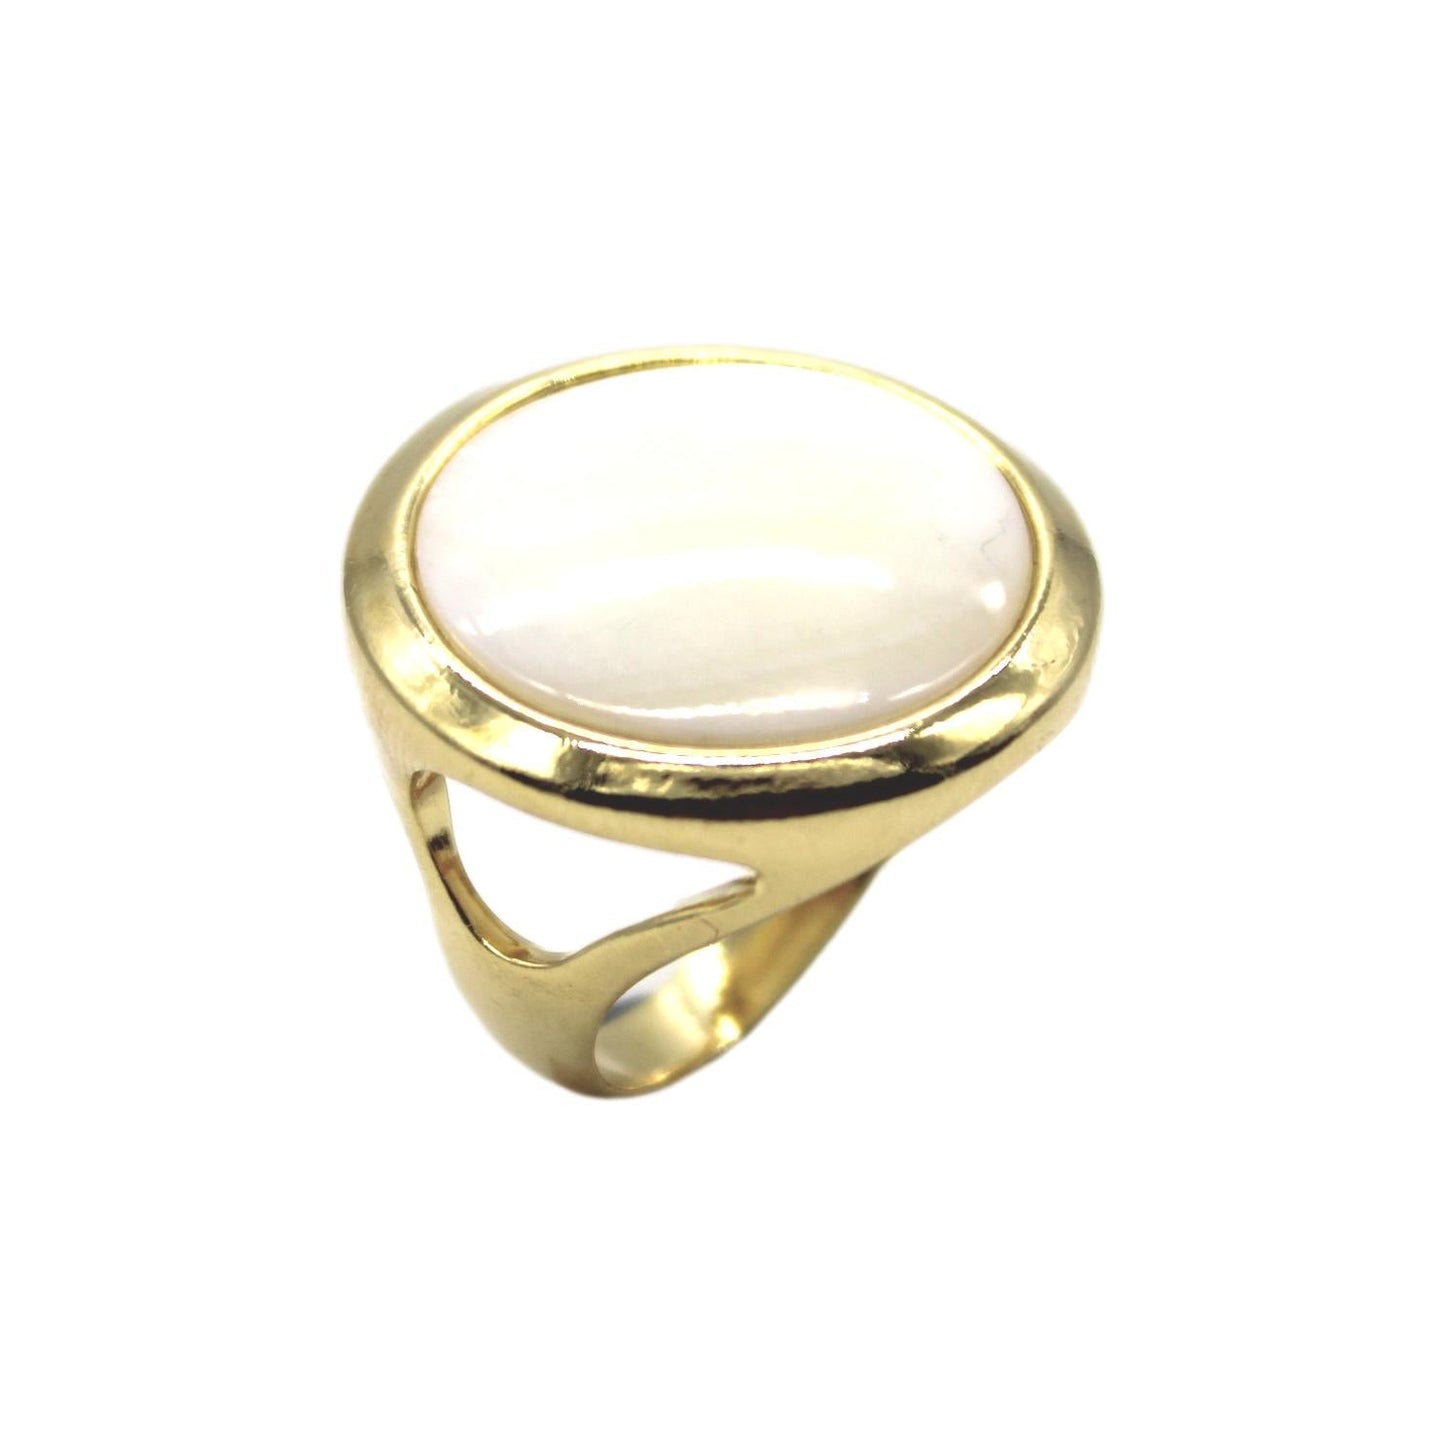 Round Gemstone Frame Ring -Sodalite